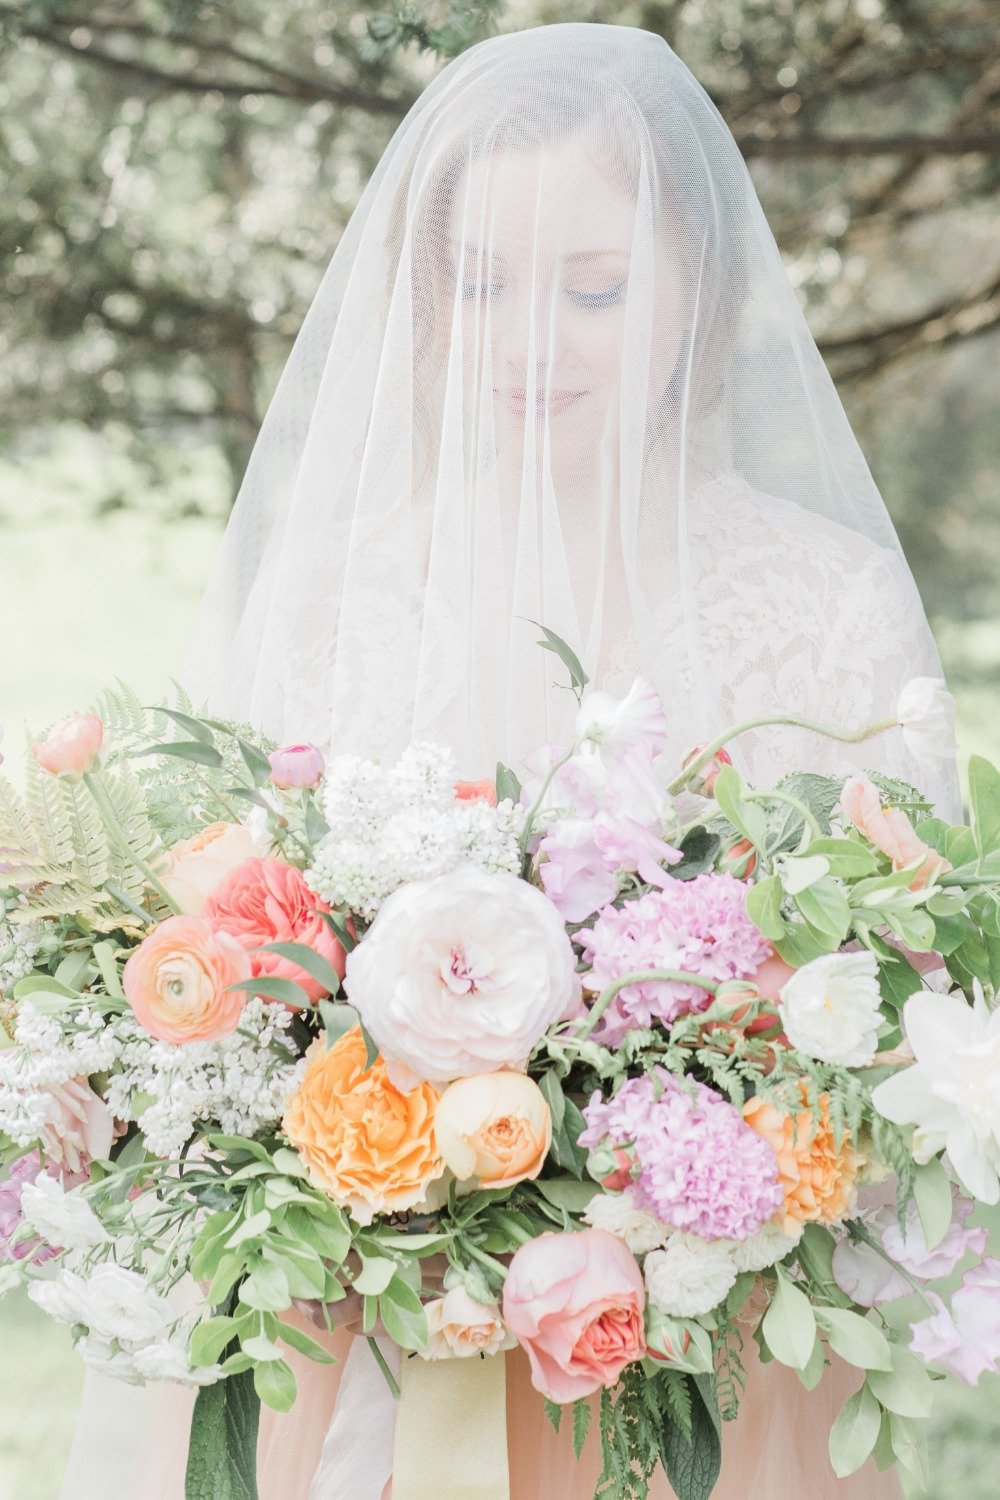 Veil bridal portrait idea